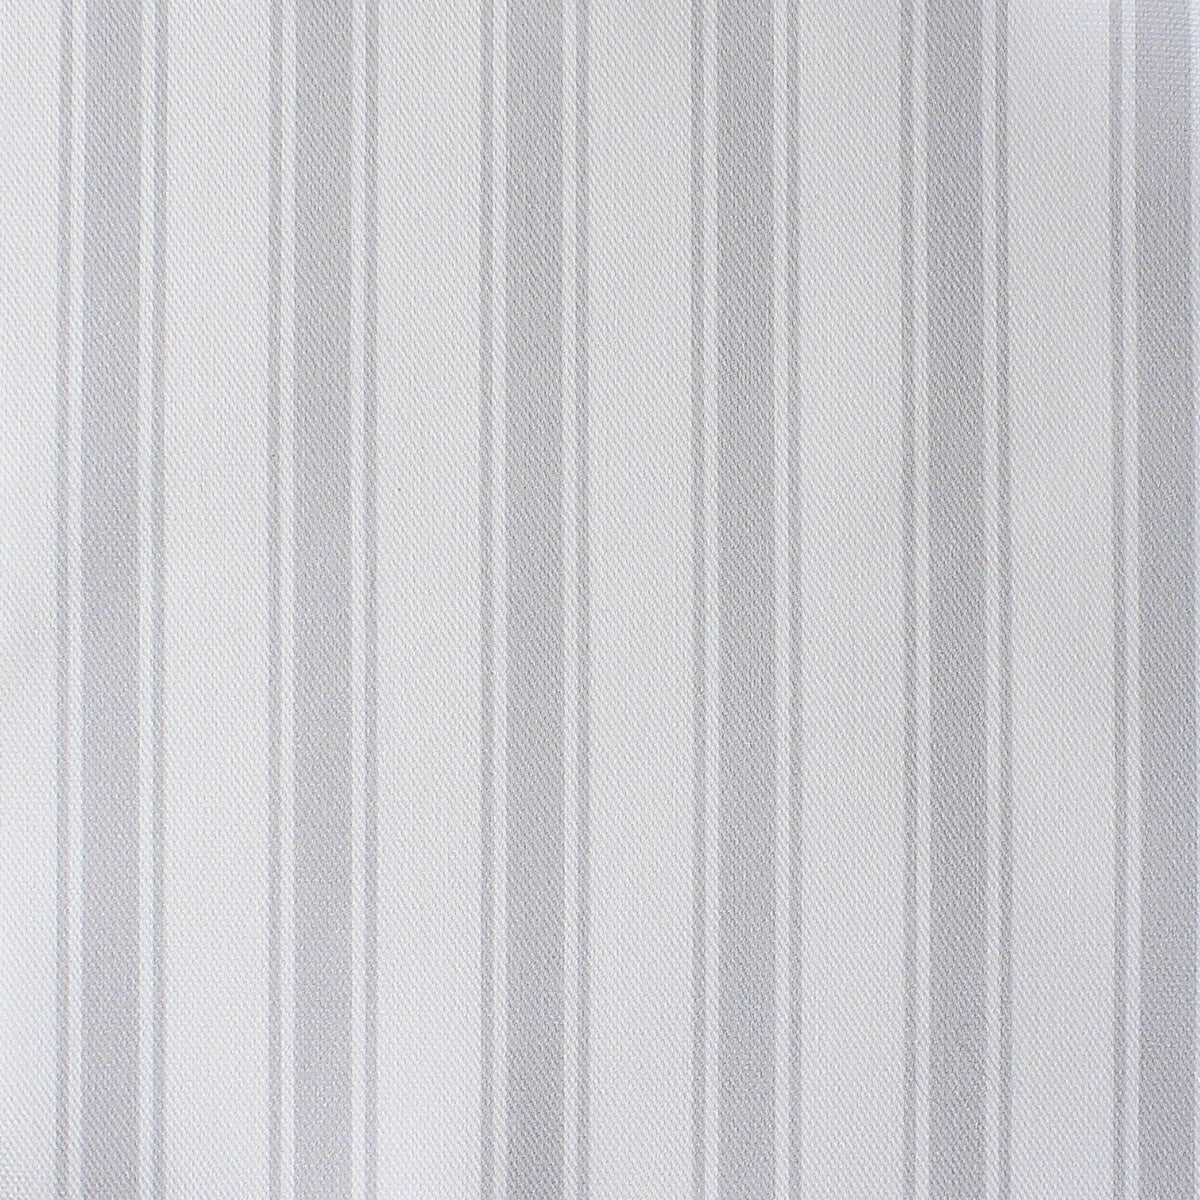 Regatta Stripe Fabric - Dove - Hydrangea Lane Home